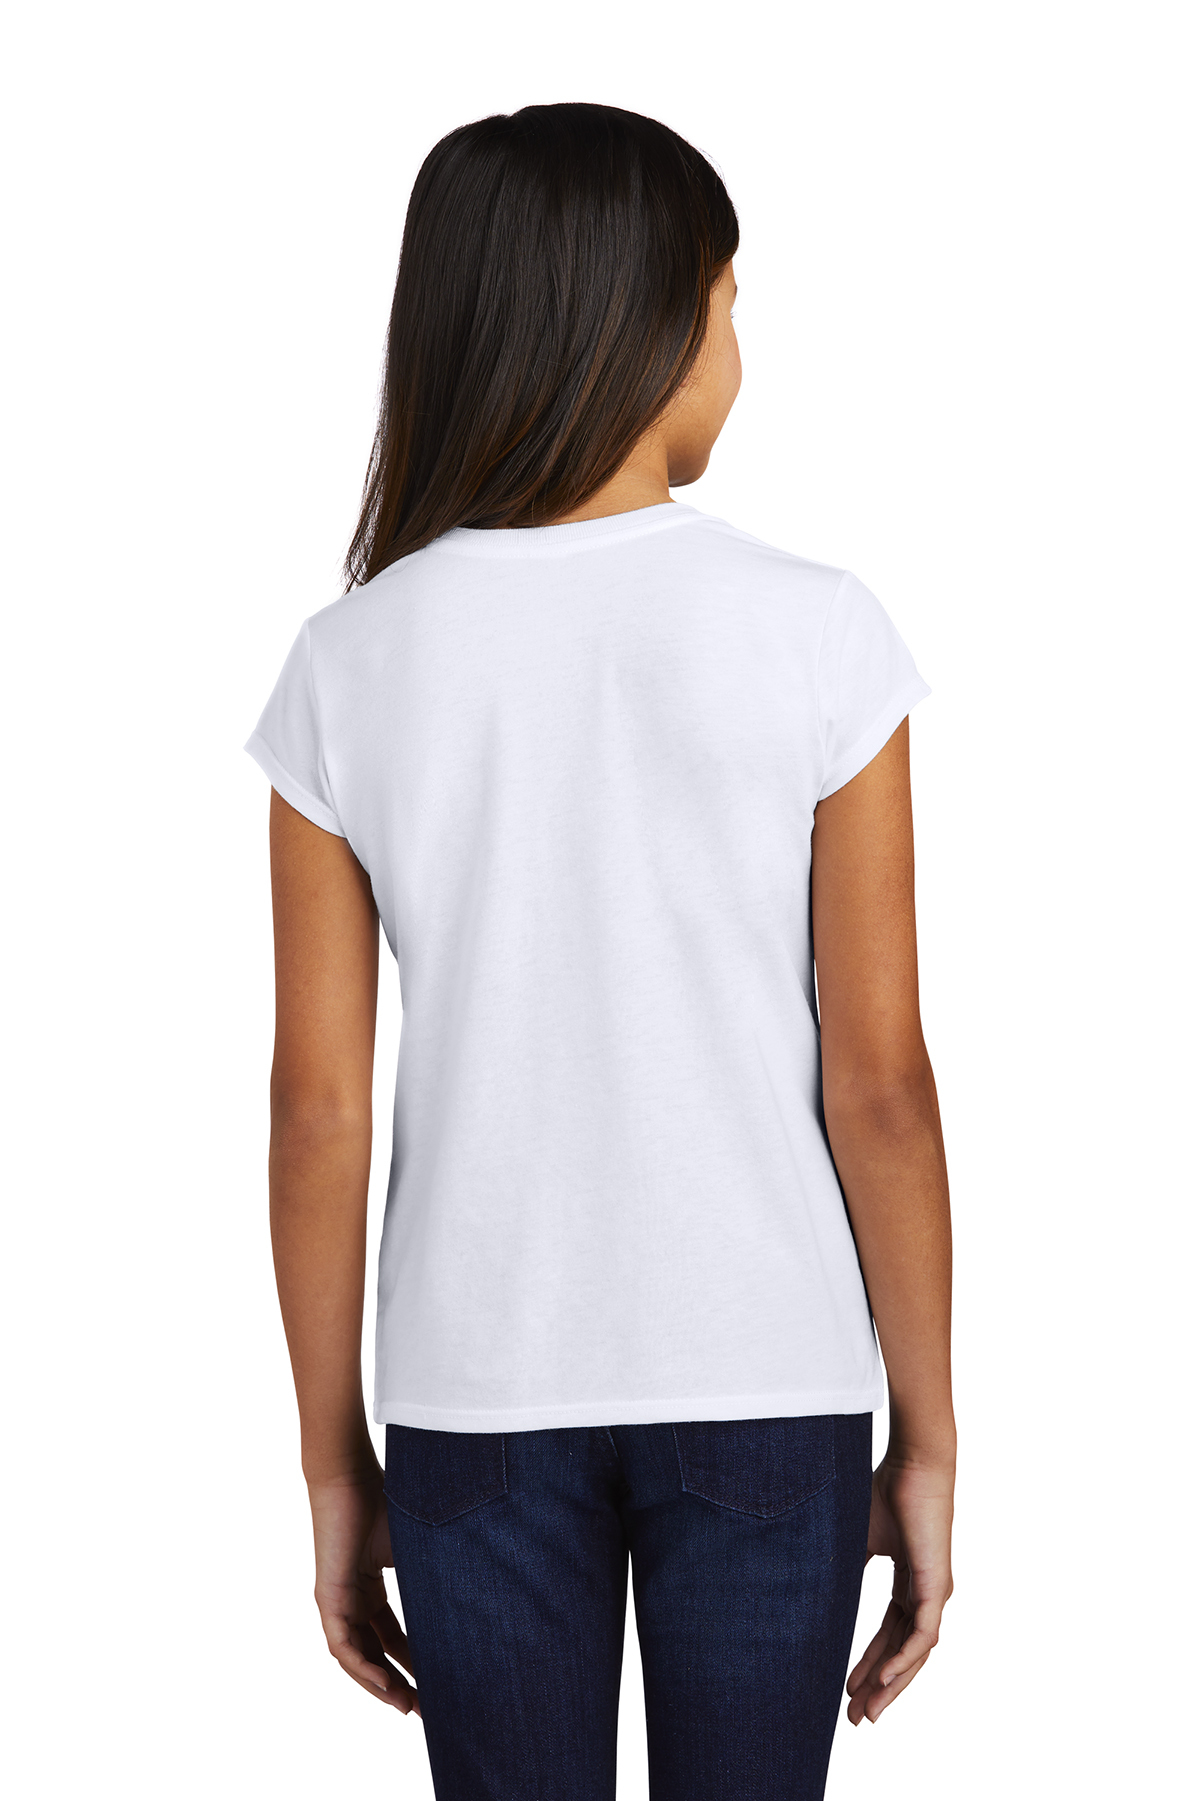 Tee-shirt Stitch blanc fille (3-12A) - DistriCenter